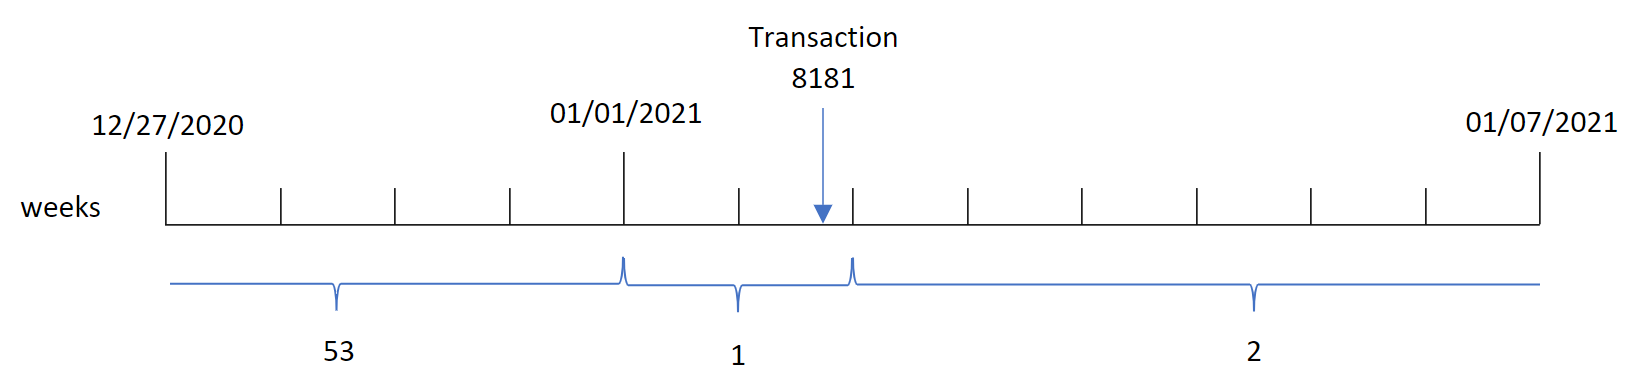 顯示 weekyear() 函數識別交易 8181 發生在第 1 週並傳回 2021 年該週年份的圖表。